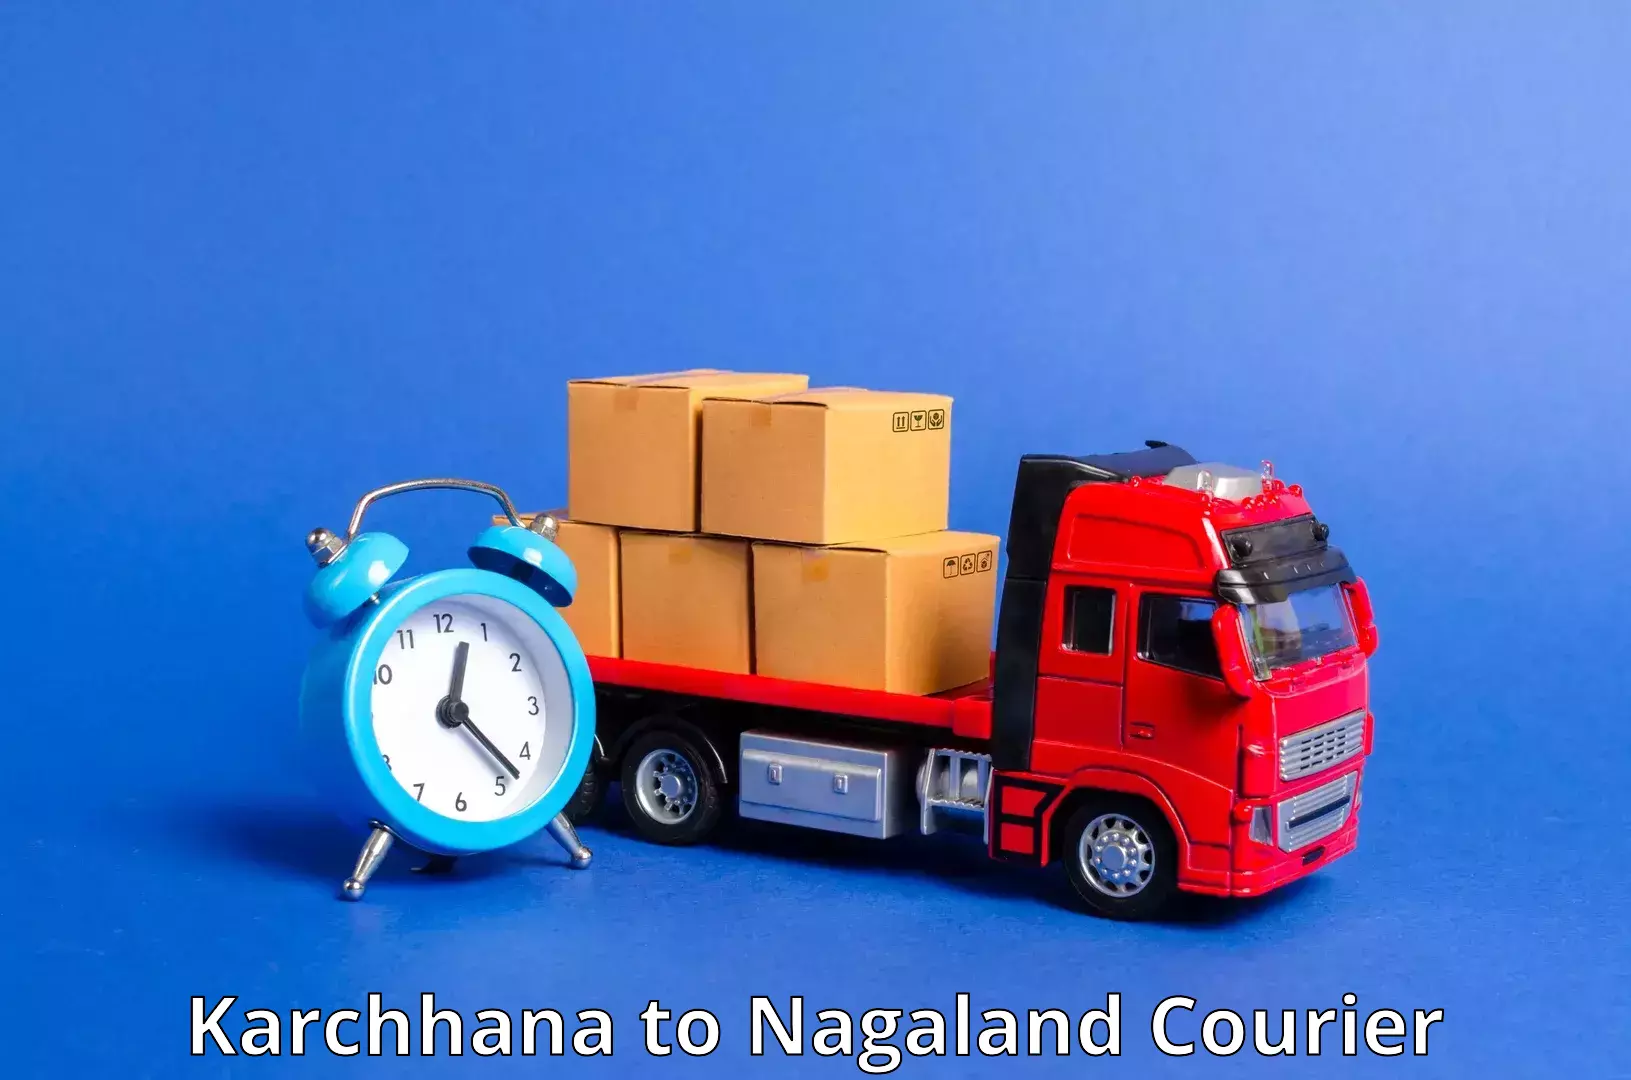 Reliable parcel services Karchhana to Dimapur